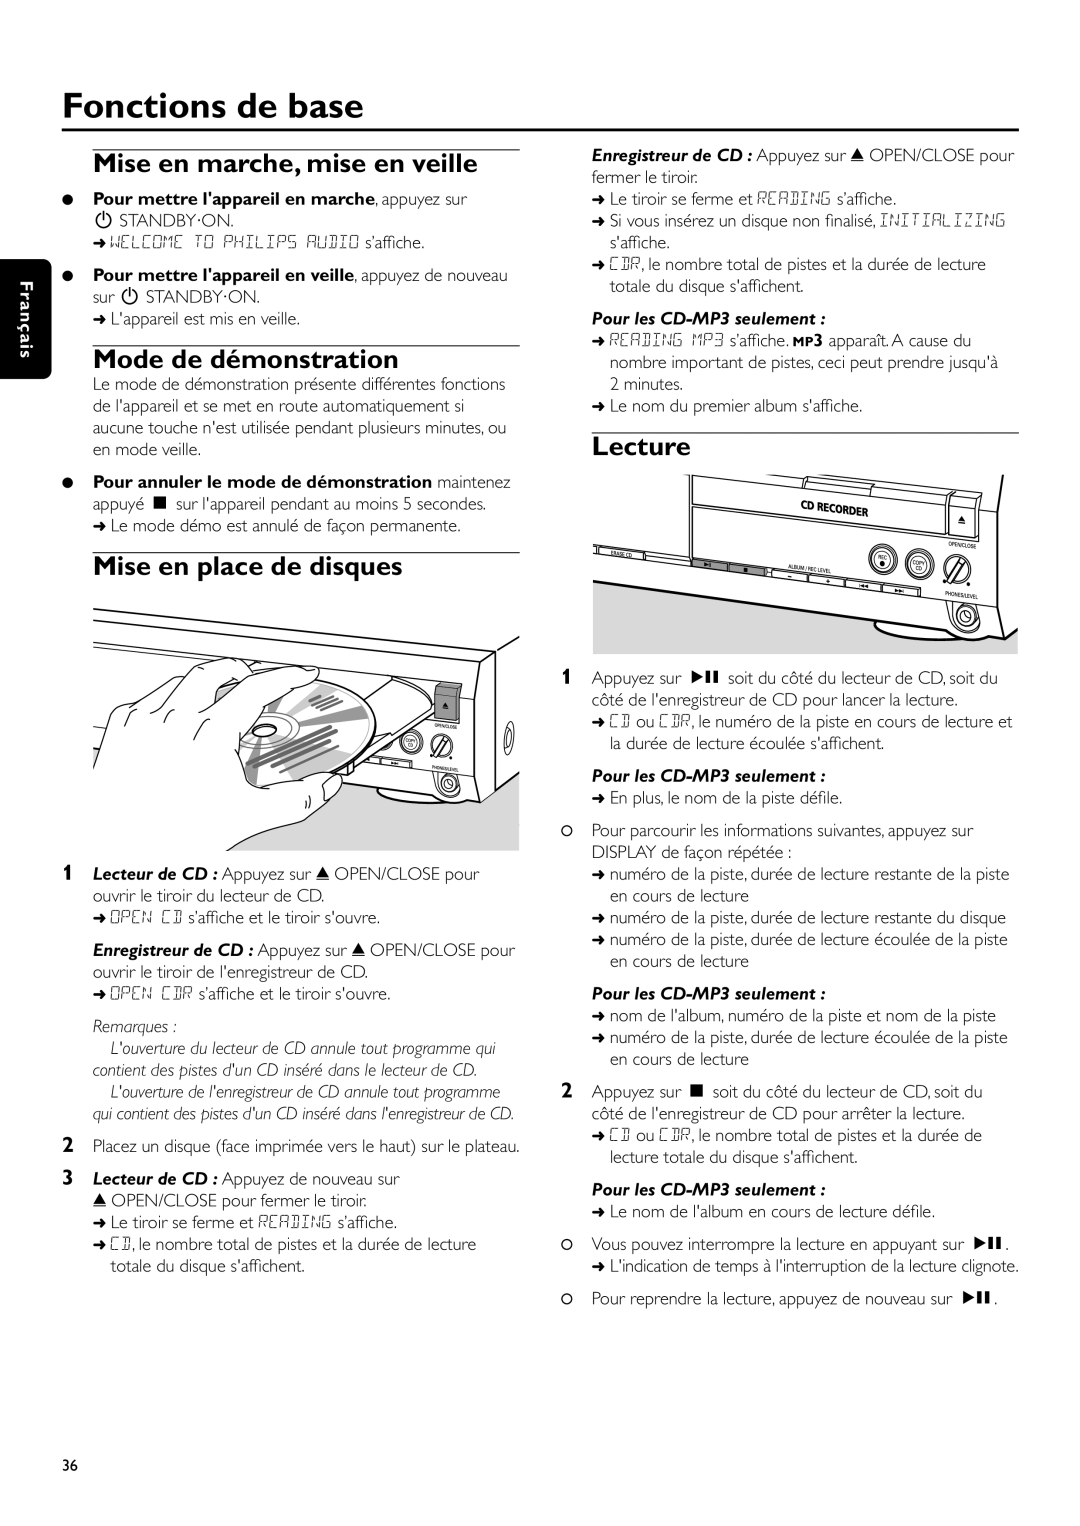 Philips CDR-795 manual Fonctions de base, Mise en marche, mise en veille, Mode de démonstration, Mise en place de disques 